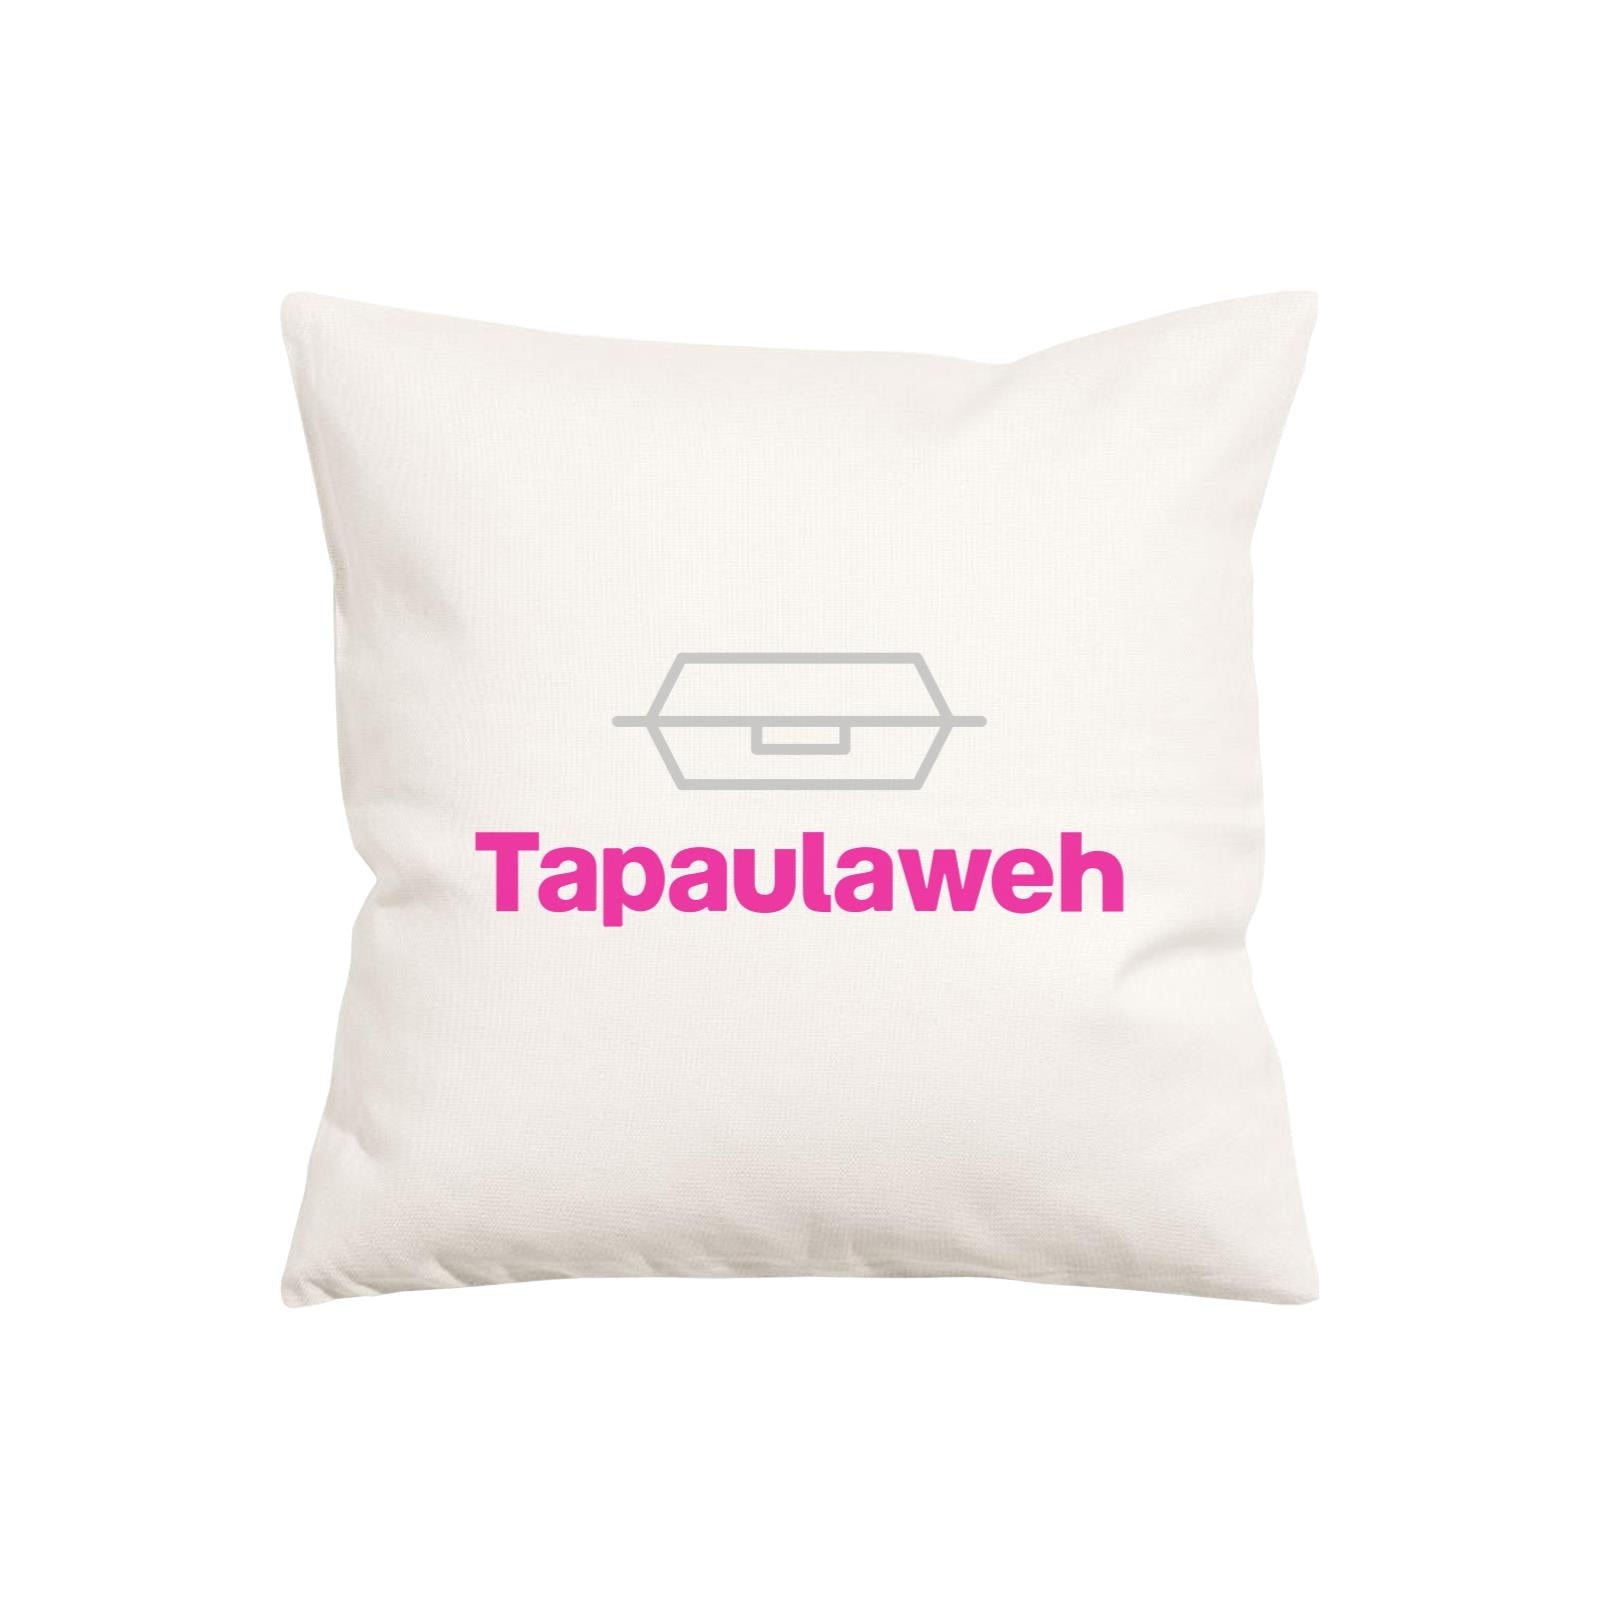 Slang Statement Tapaulaweh Pillow Cushion